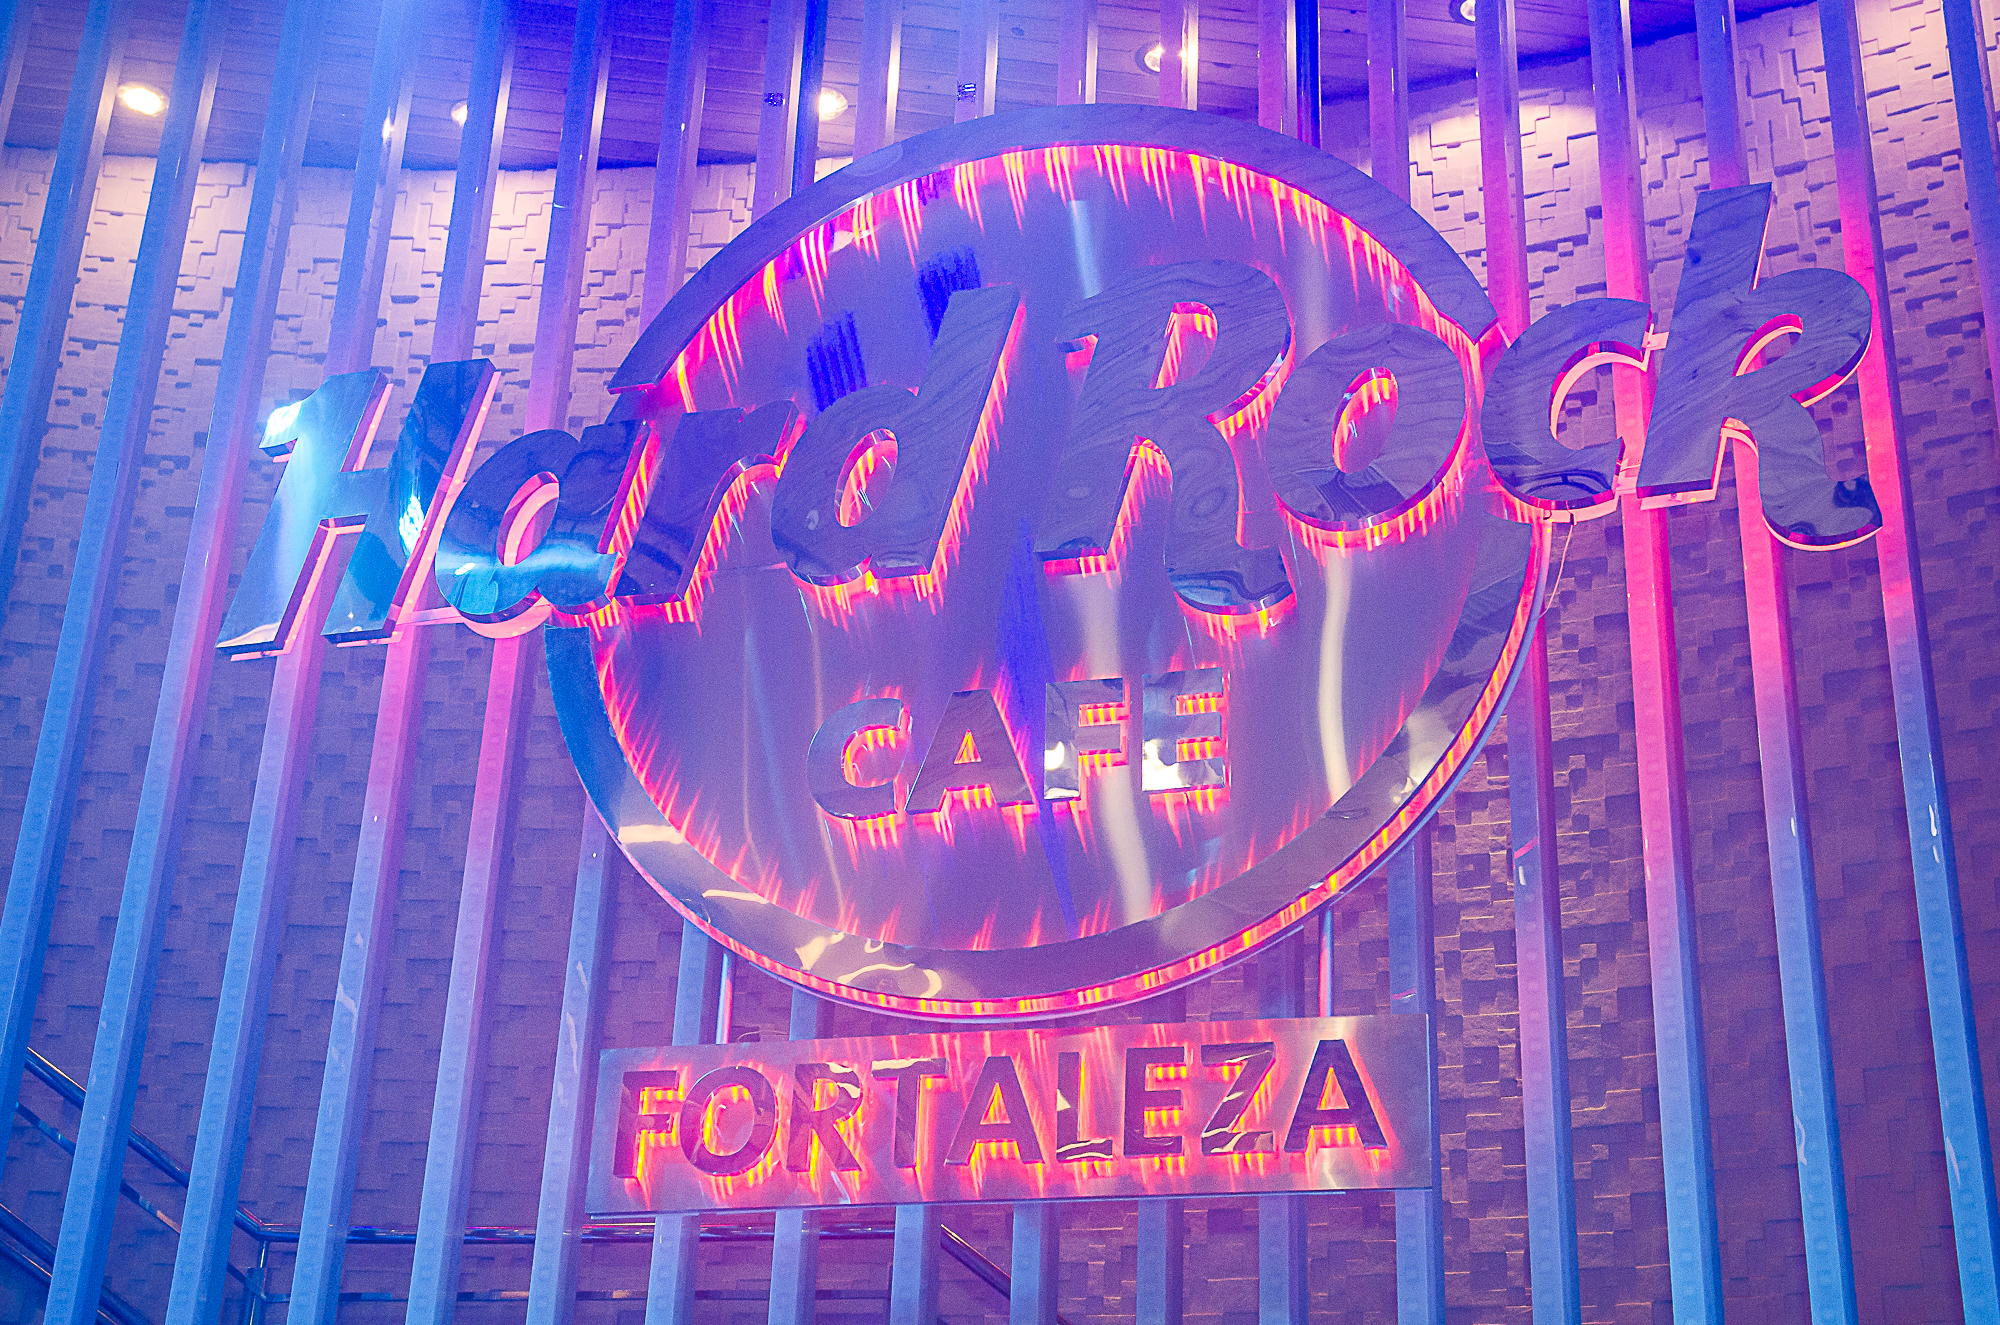 Hard Rock Cafe Fortaleza comemora 48 anos da marca com festa retrô, show do The Mob e promoções em sanduíche